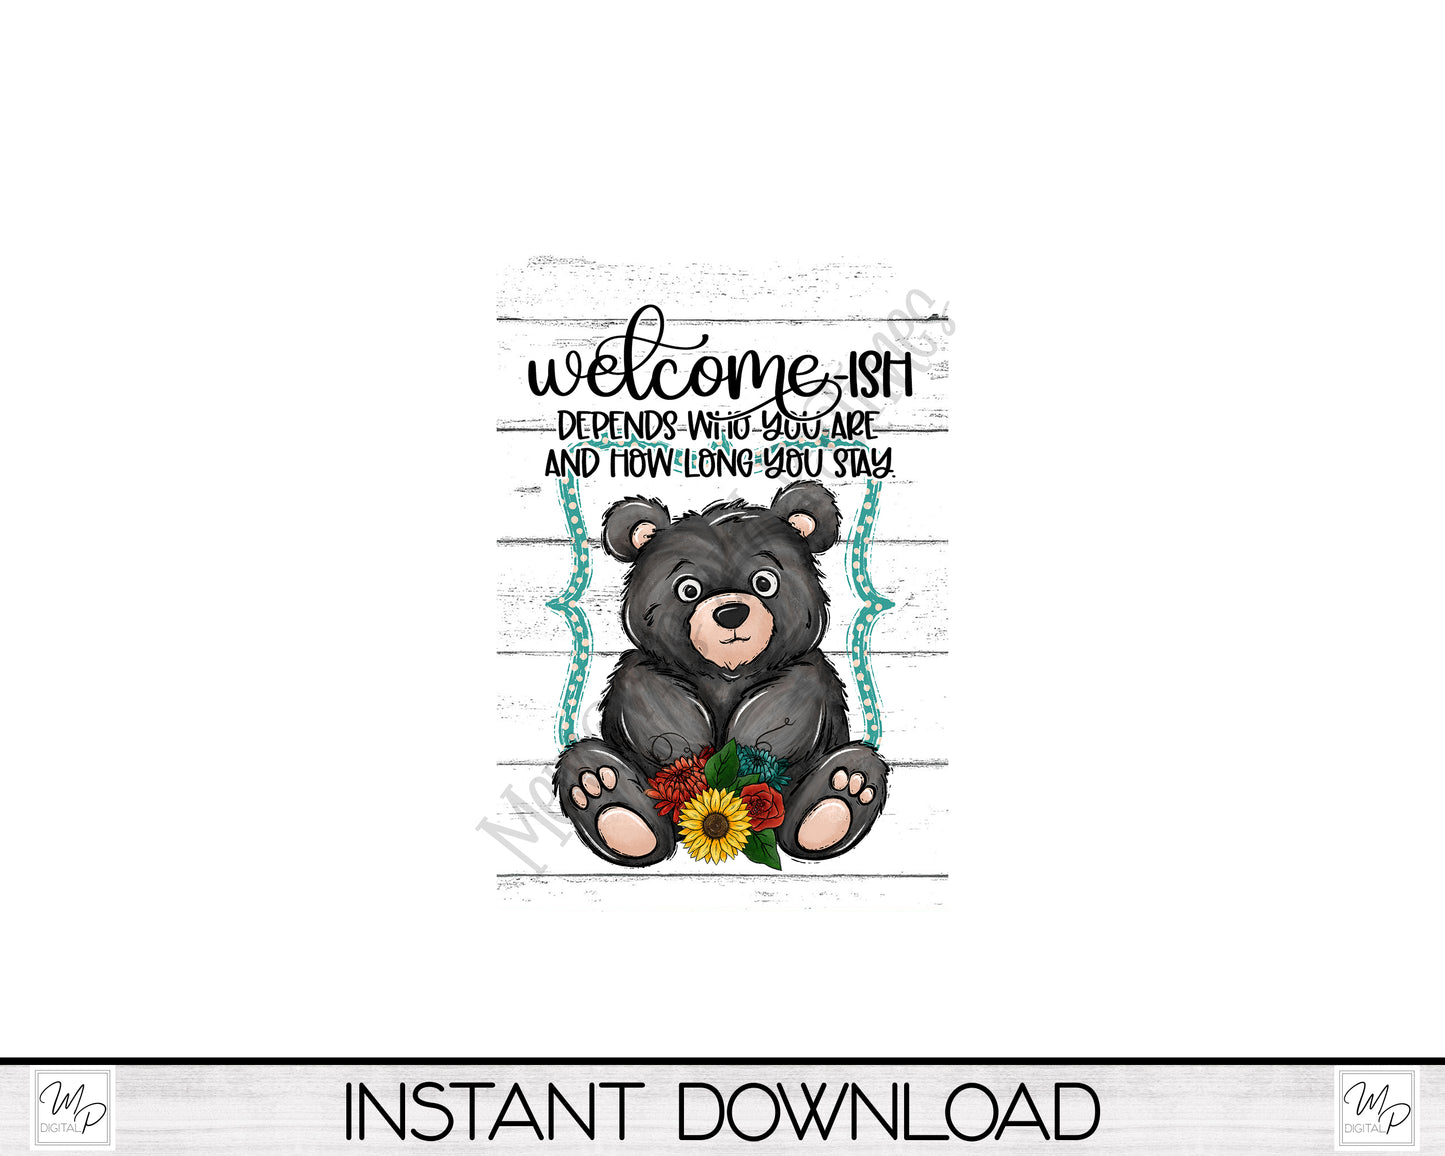 12x18 Garden Flag Sublimation Design, Welcome-ish, Funny Bear Flag Digital Download